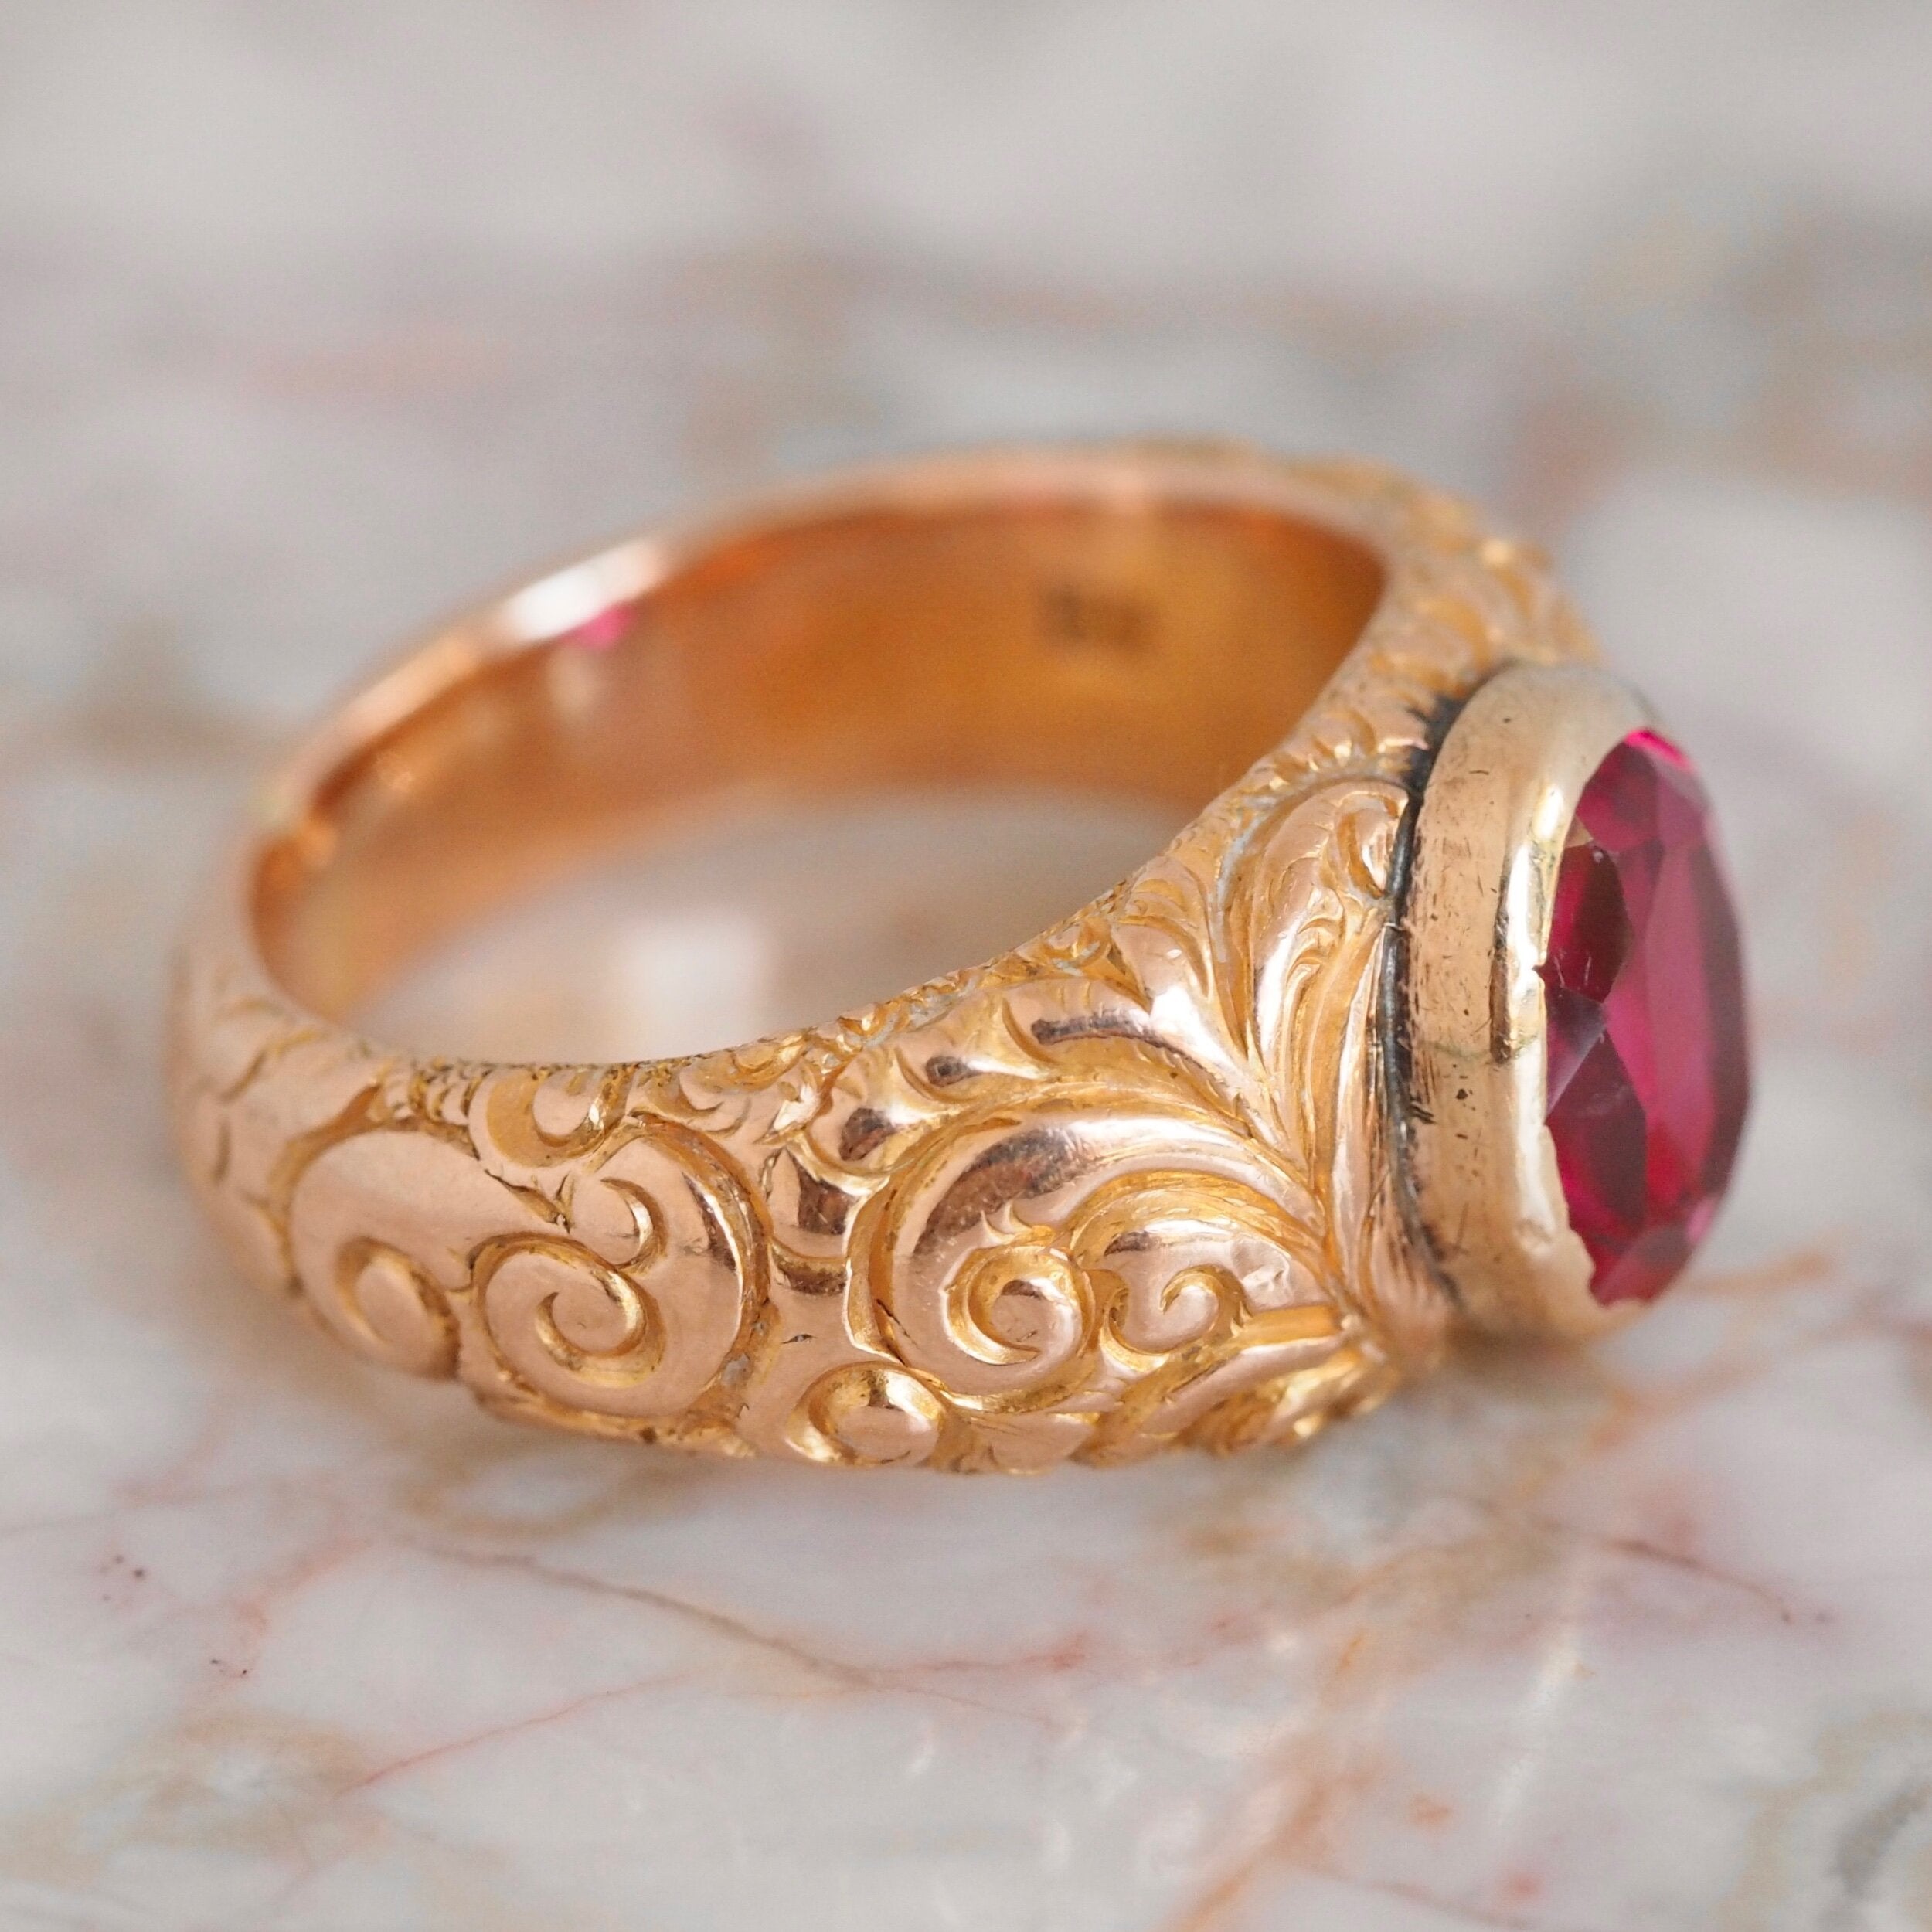 Antique Victorian Engraved 14k Gold Bezel Set Ruby Ring 5